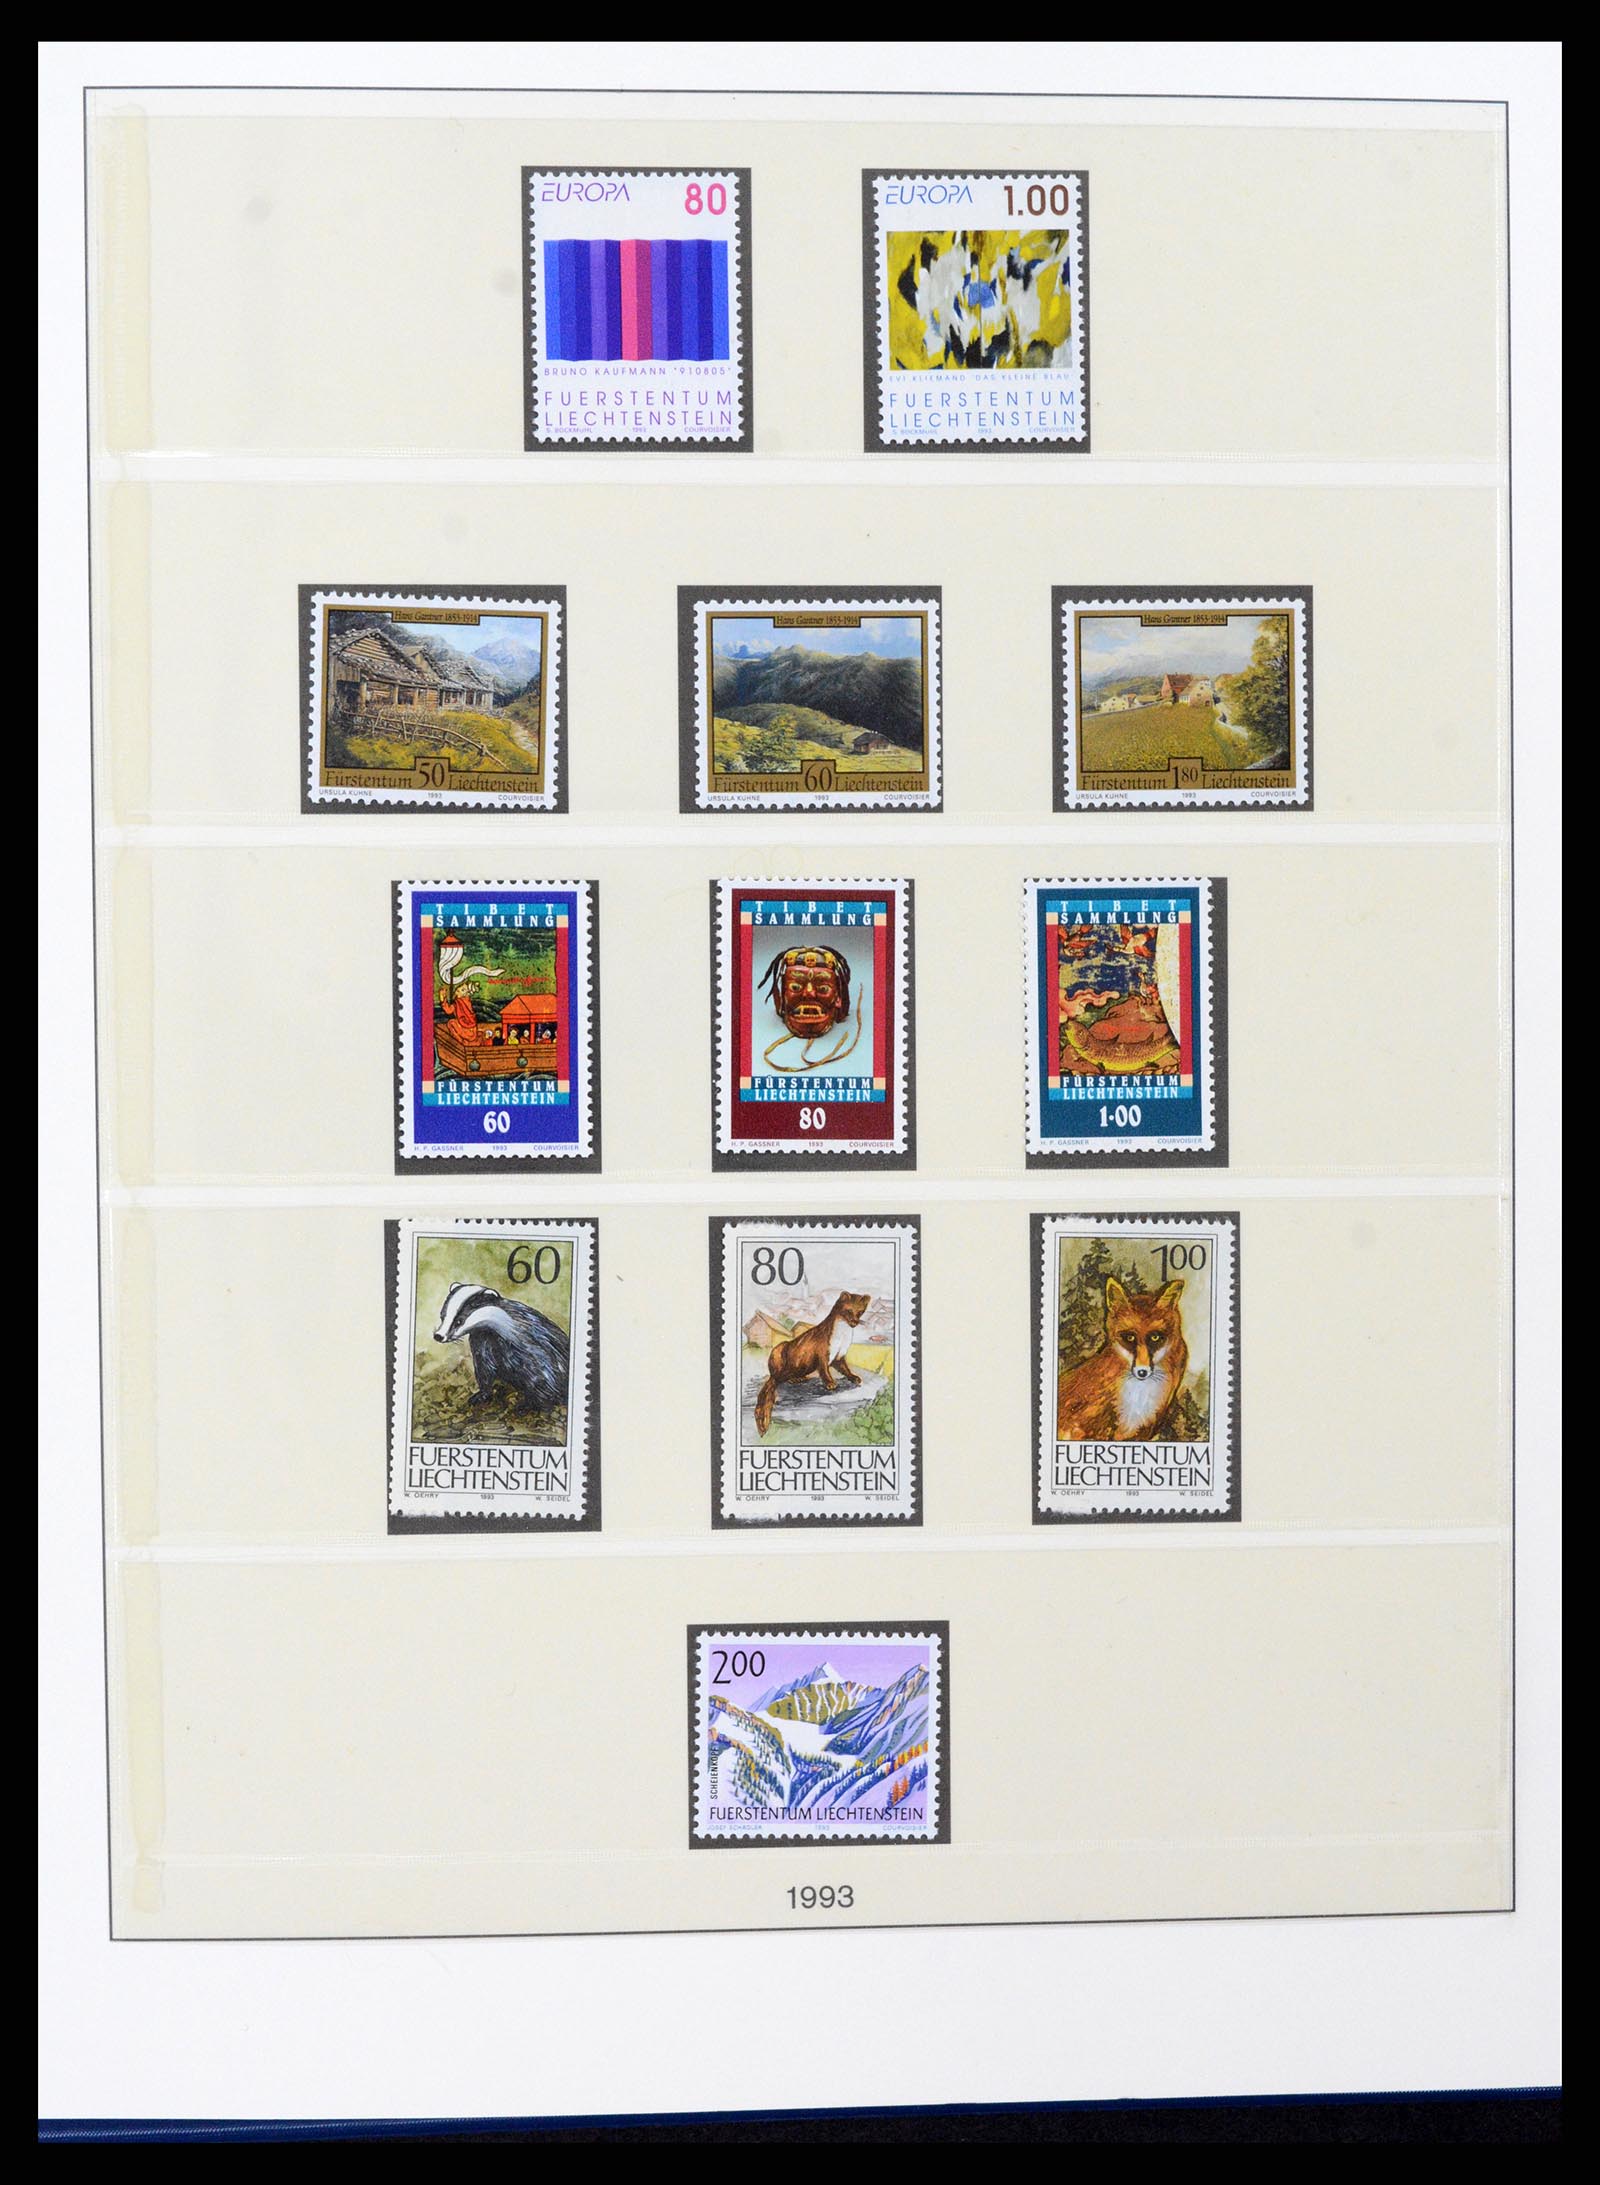 37295 108 - Stamp collection 37295 Liechtenstein 1912-2009.